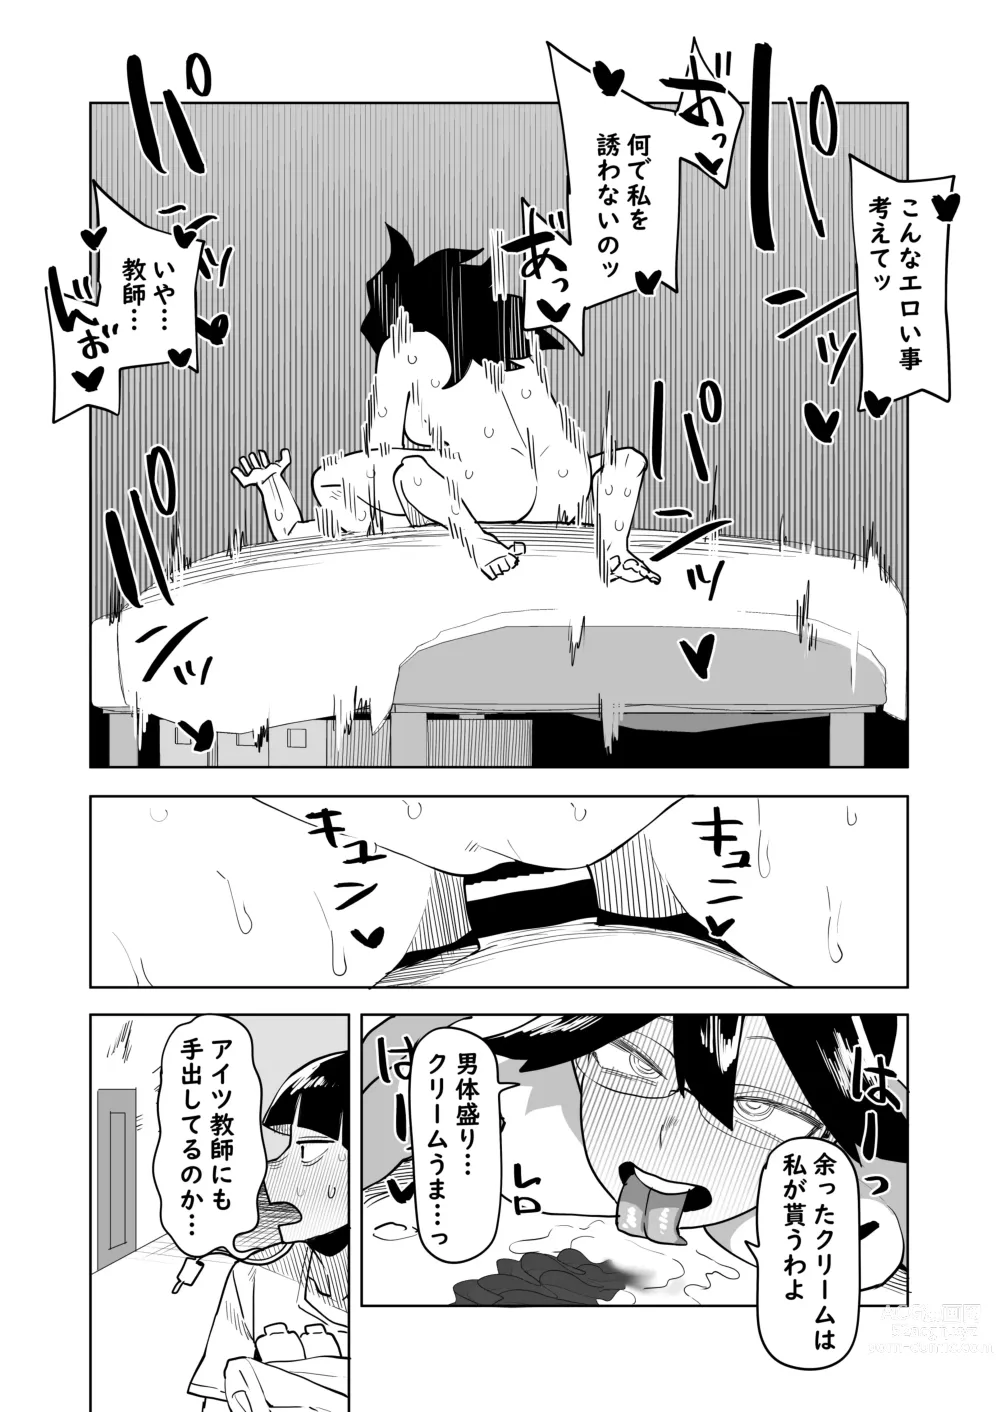 Page 12 of doujinshi Teisou Gyakuten Mono Valentine no Baai